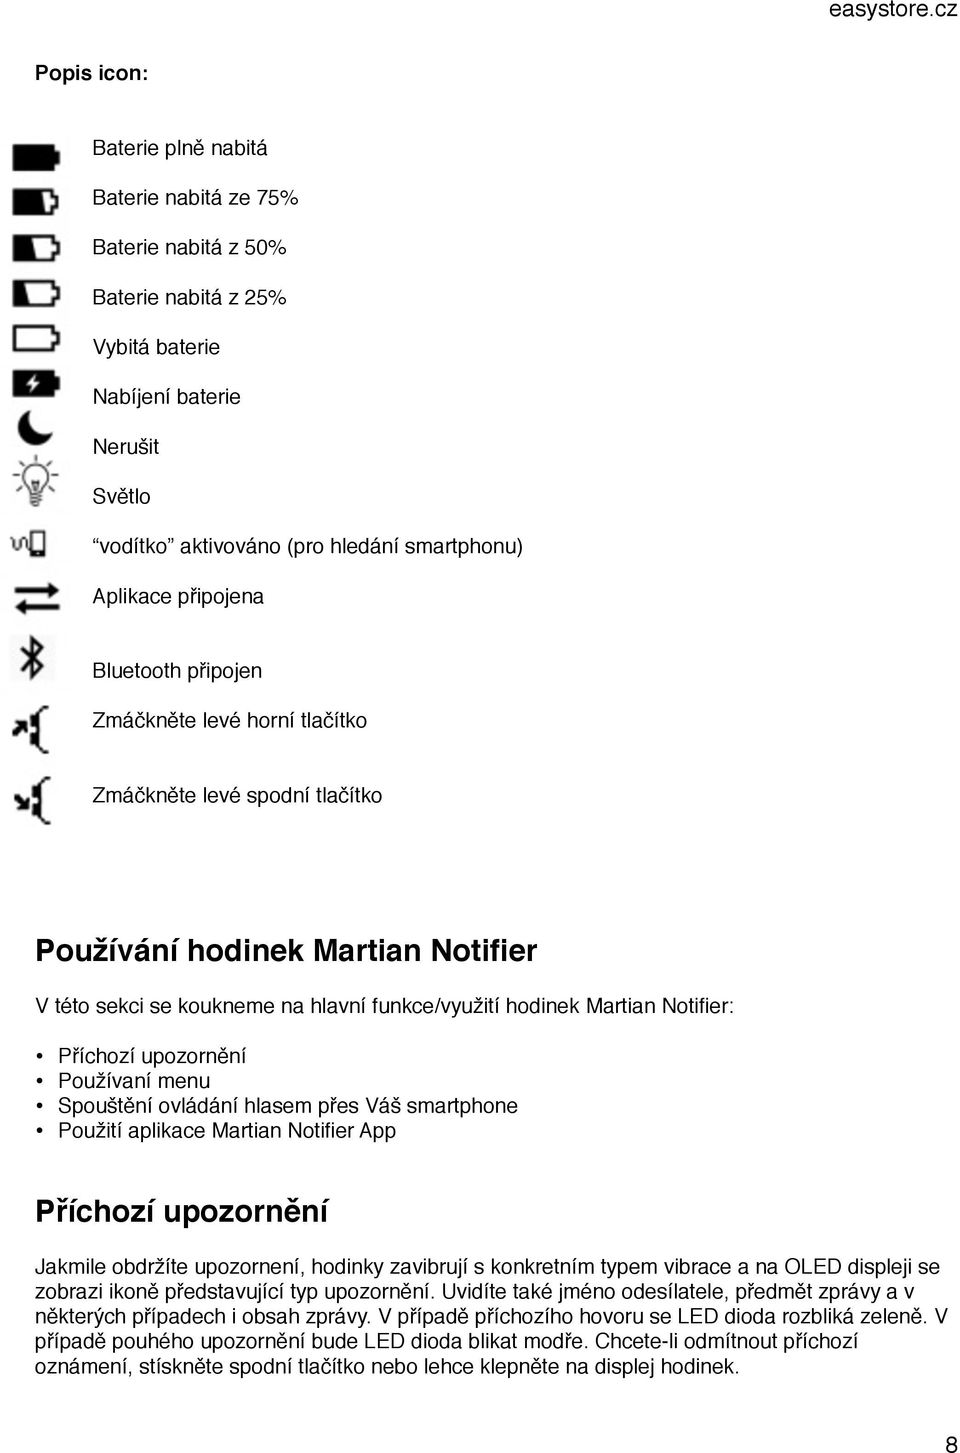 Notifier: Příchozí upozornění Používaní menu Spouštění ovládání hlasem přes Váš smartphone Použití aplikace Martian Notifier App Příchozí upozornění Jakmile obdržíte upozornení, hodinky zavibrují s